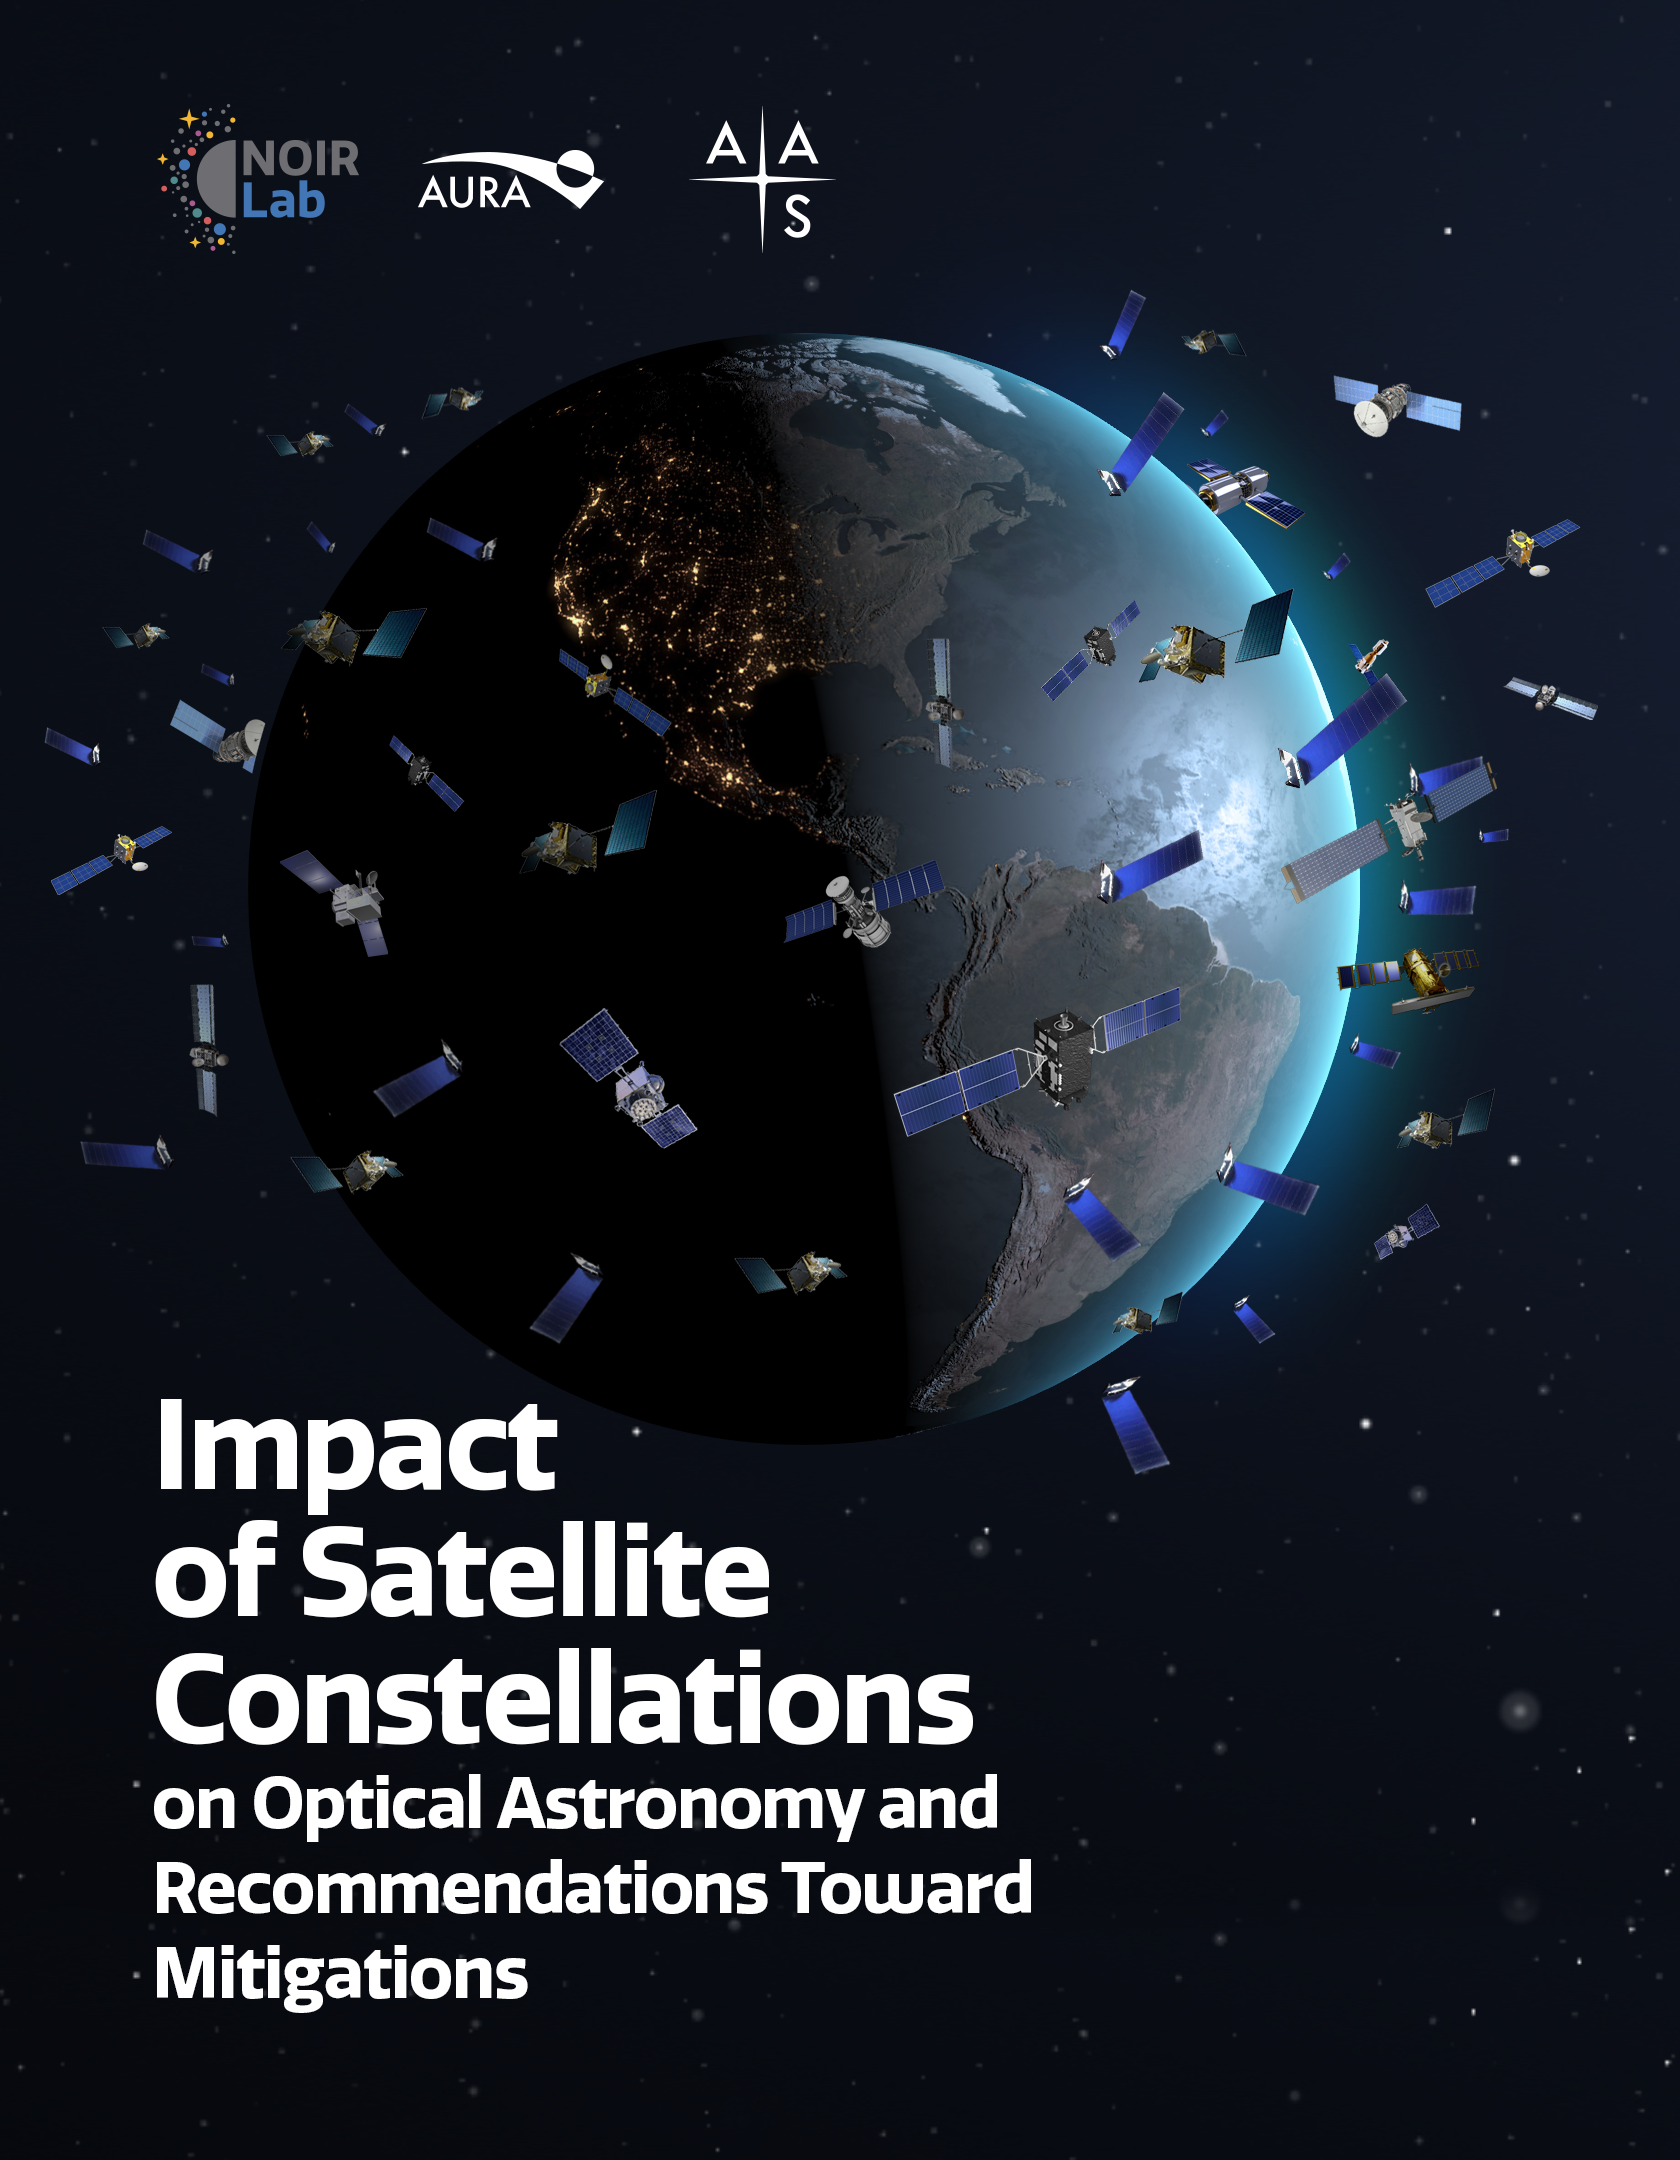 Okładka raportu na temat wpływu konstelacji satelitarnych na astronomię optyczną (Źródło: American Astronomical Society)